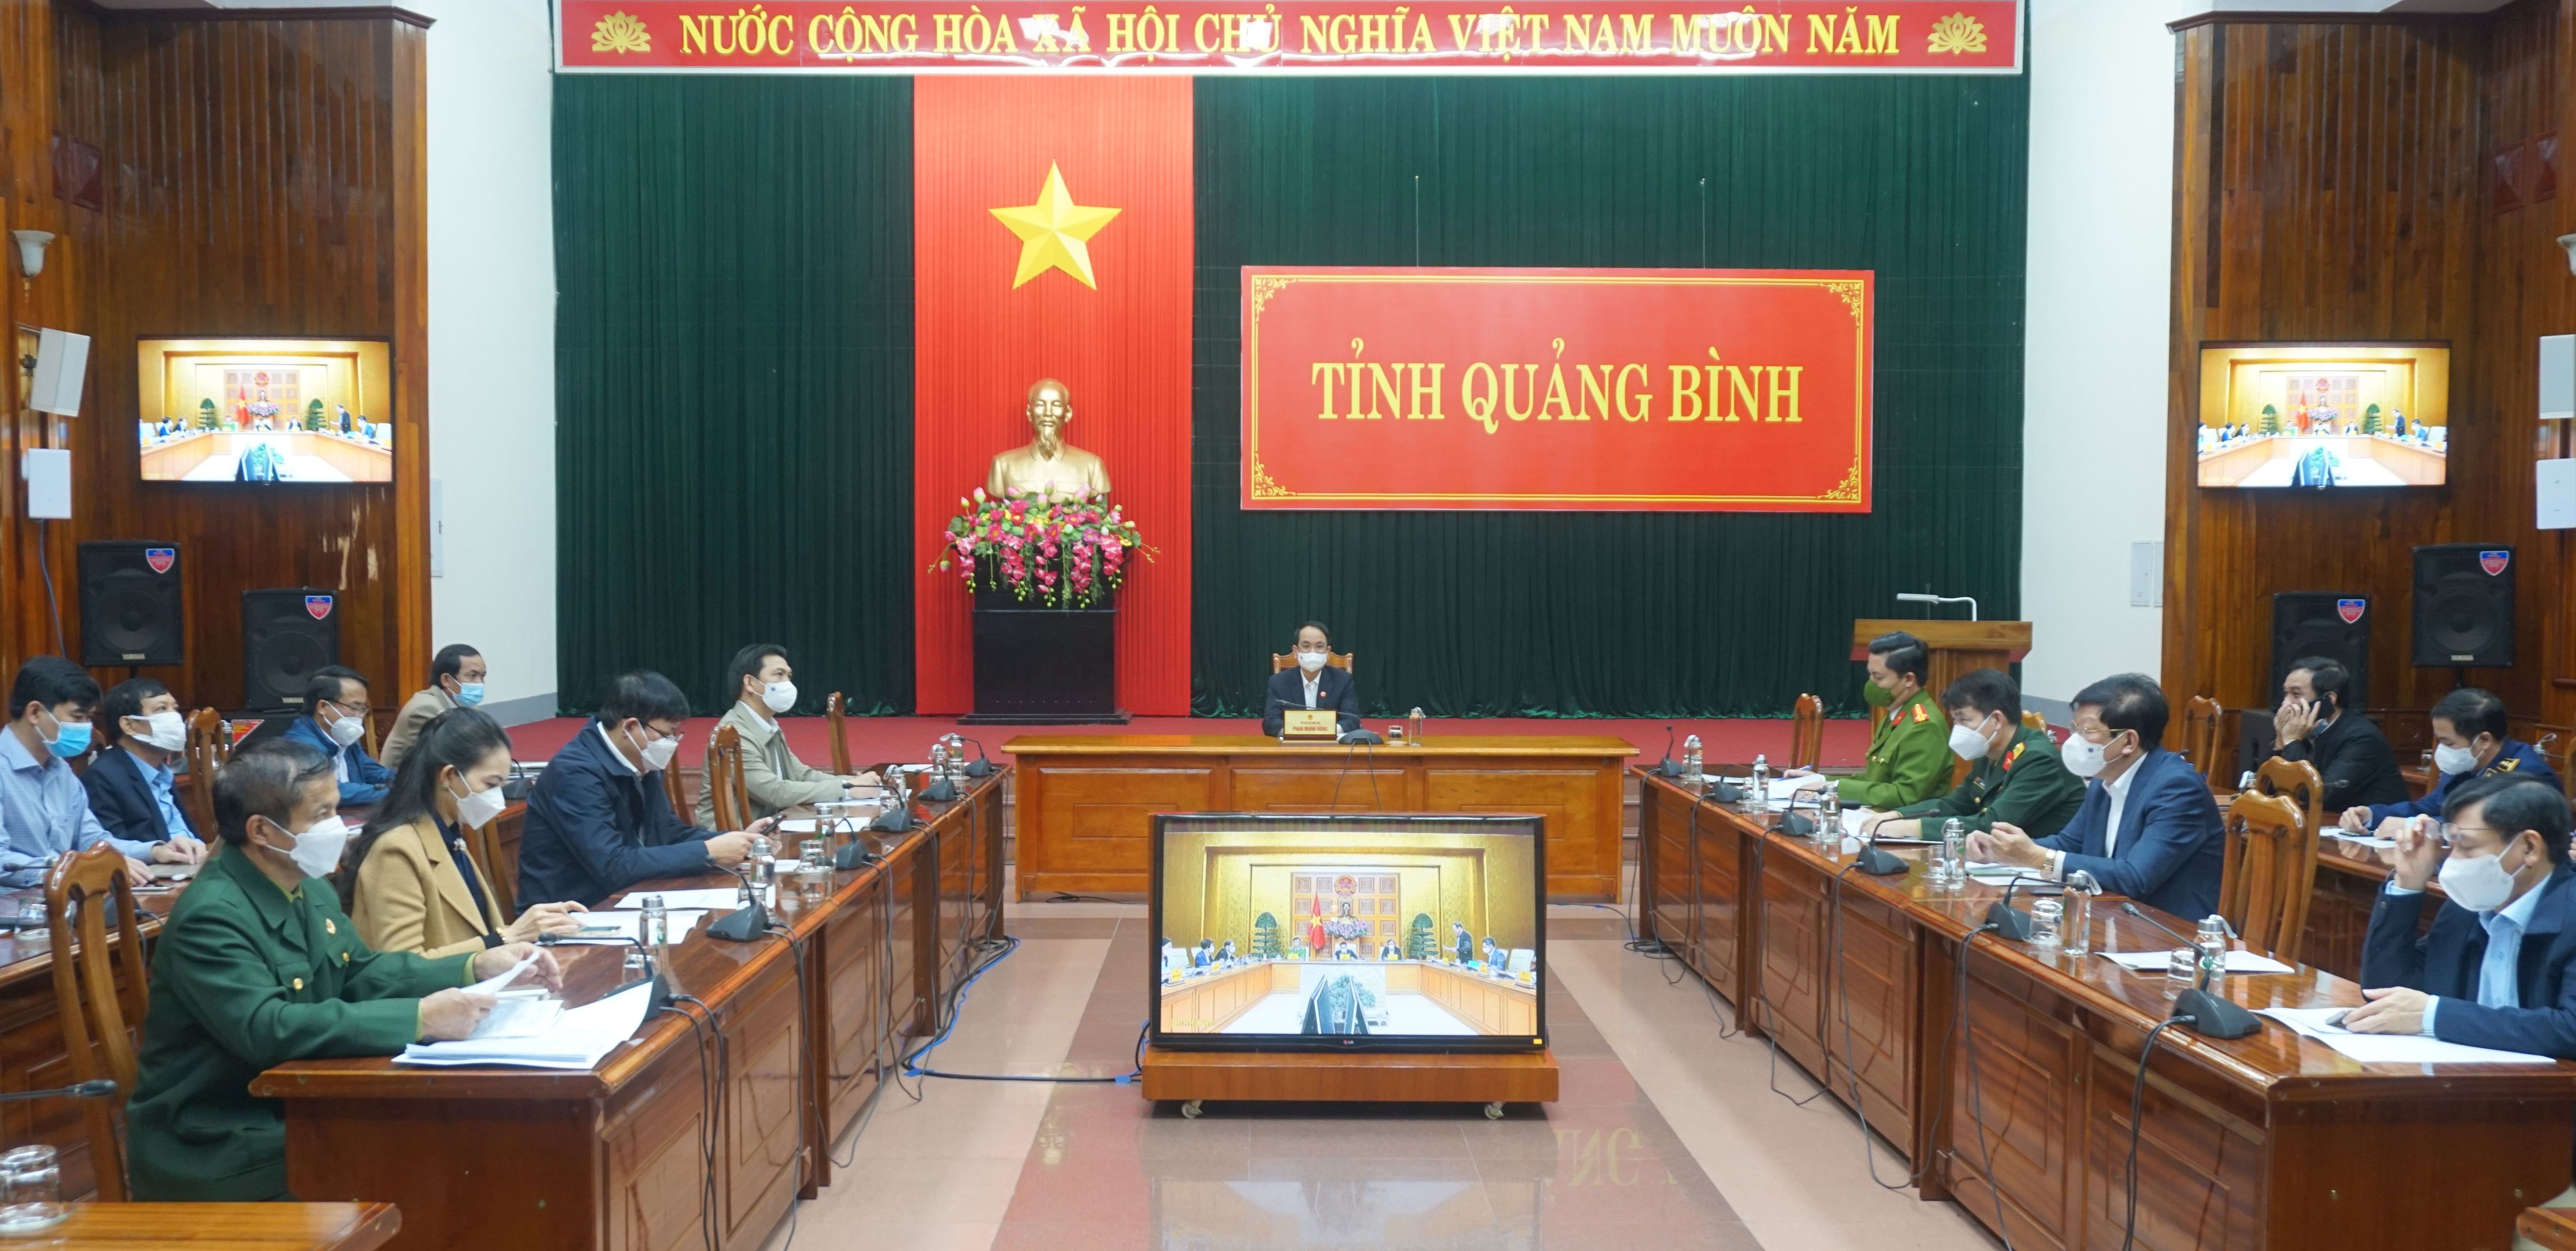  Các đại biểu tham dự hội nghị tại điểm cầu tỉnh Quảng Bình.